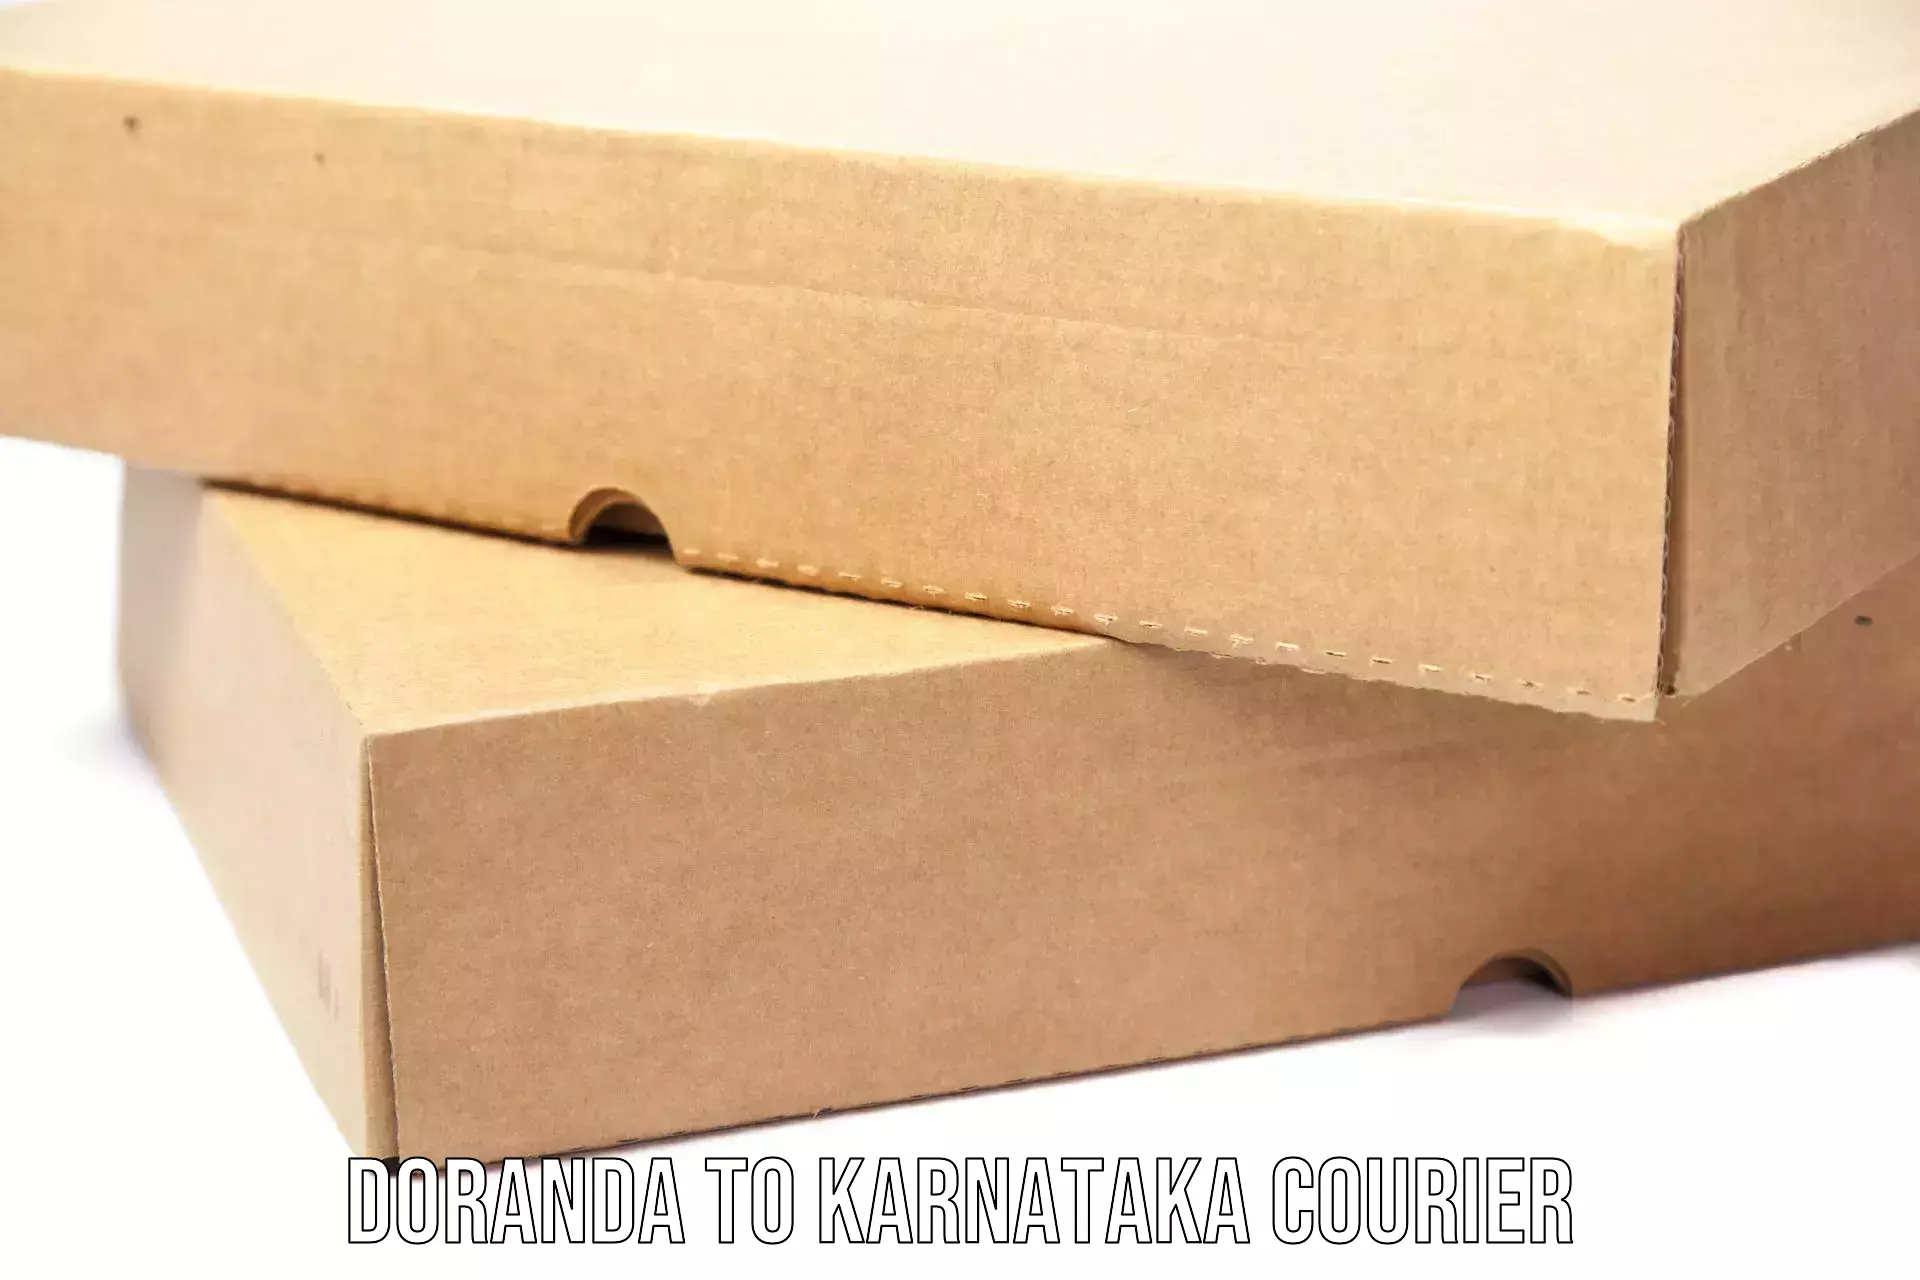 Reliable shipping partners Doranda to Kanakapura